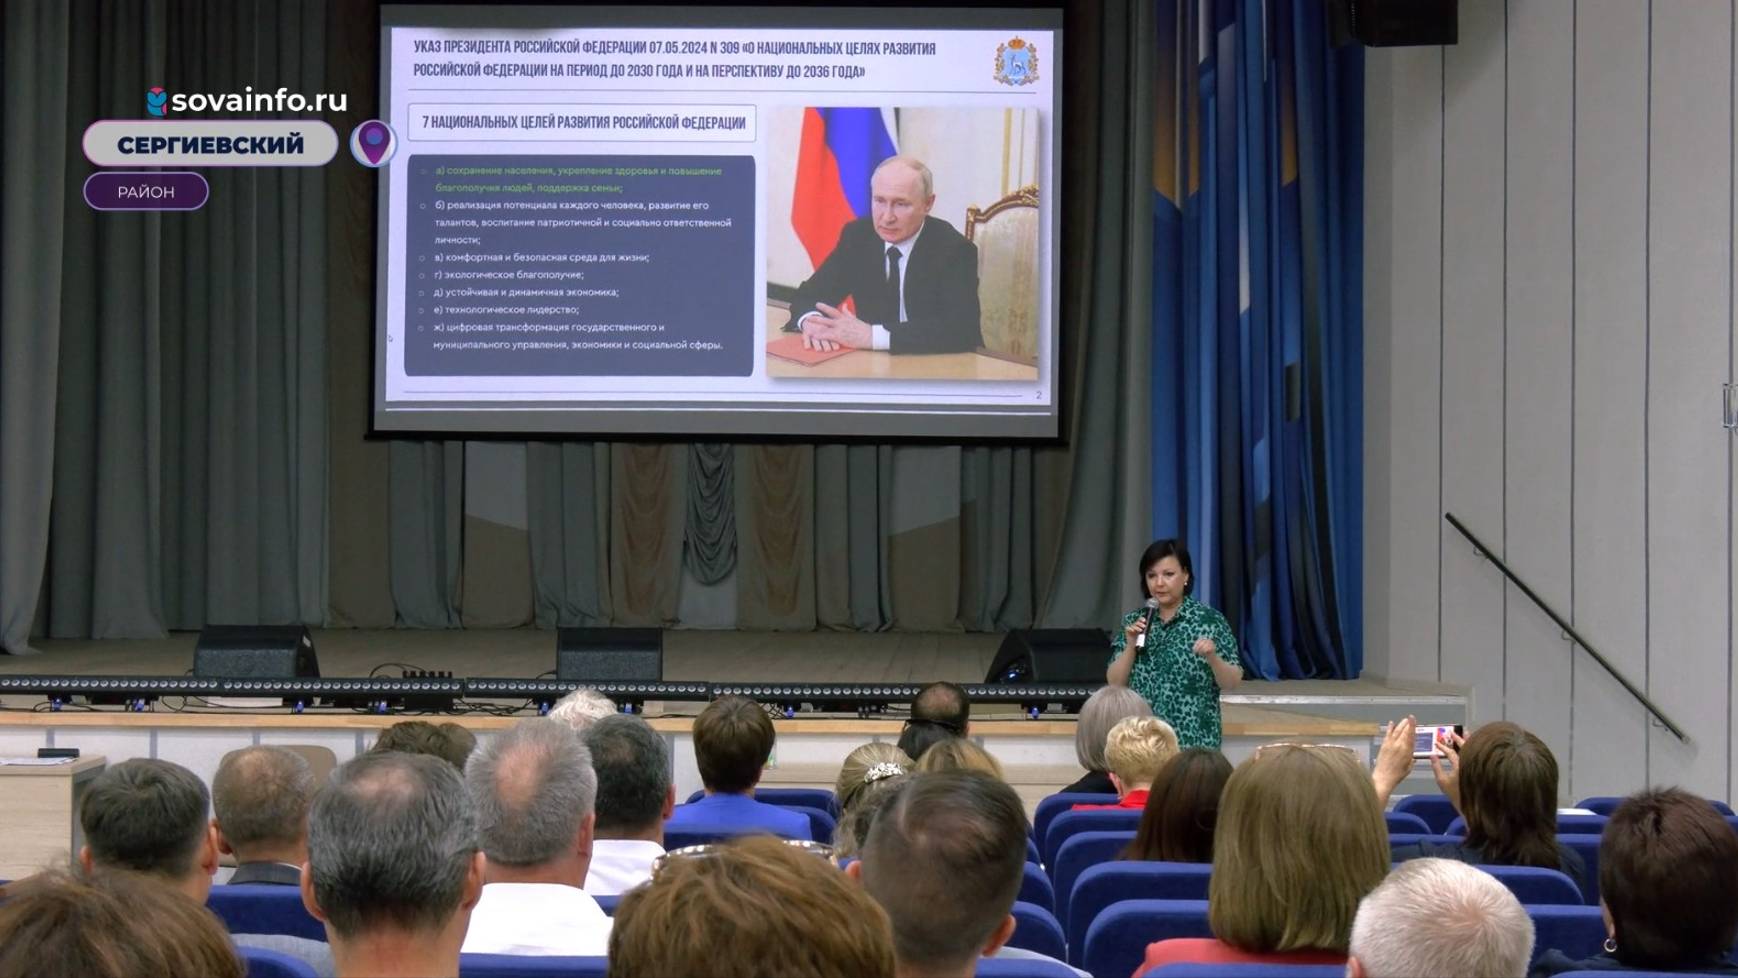 Особенности развития Самарской области обсудили участники стратегической сессии